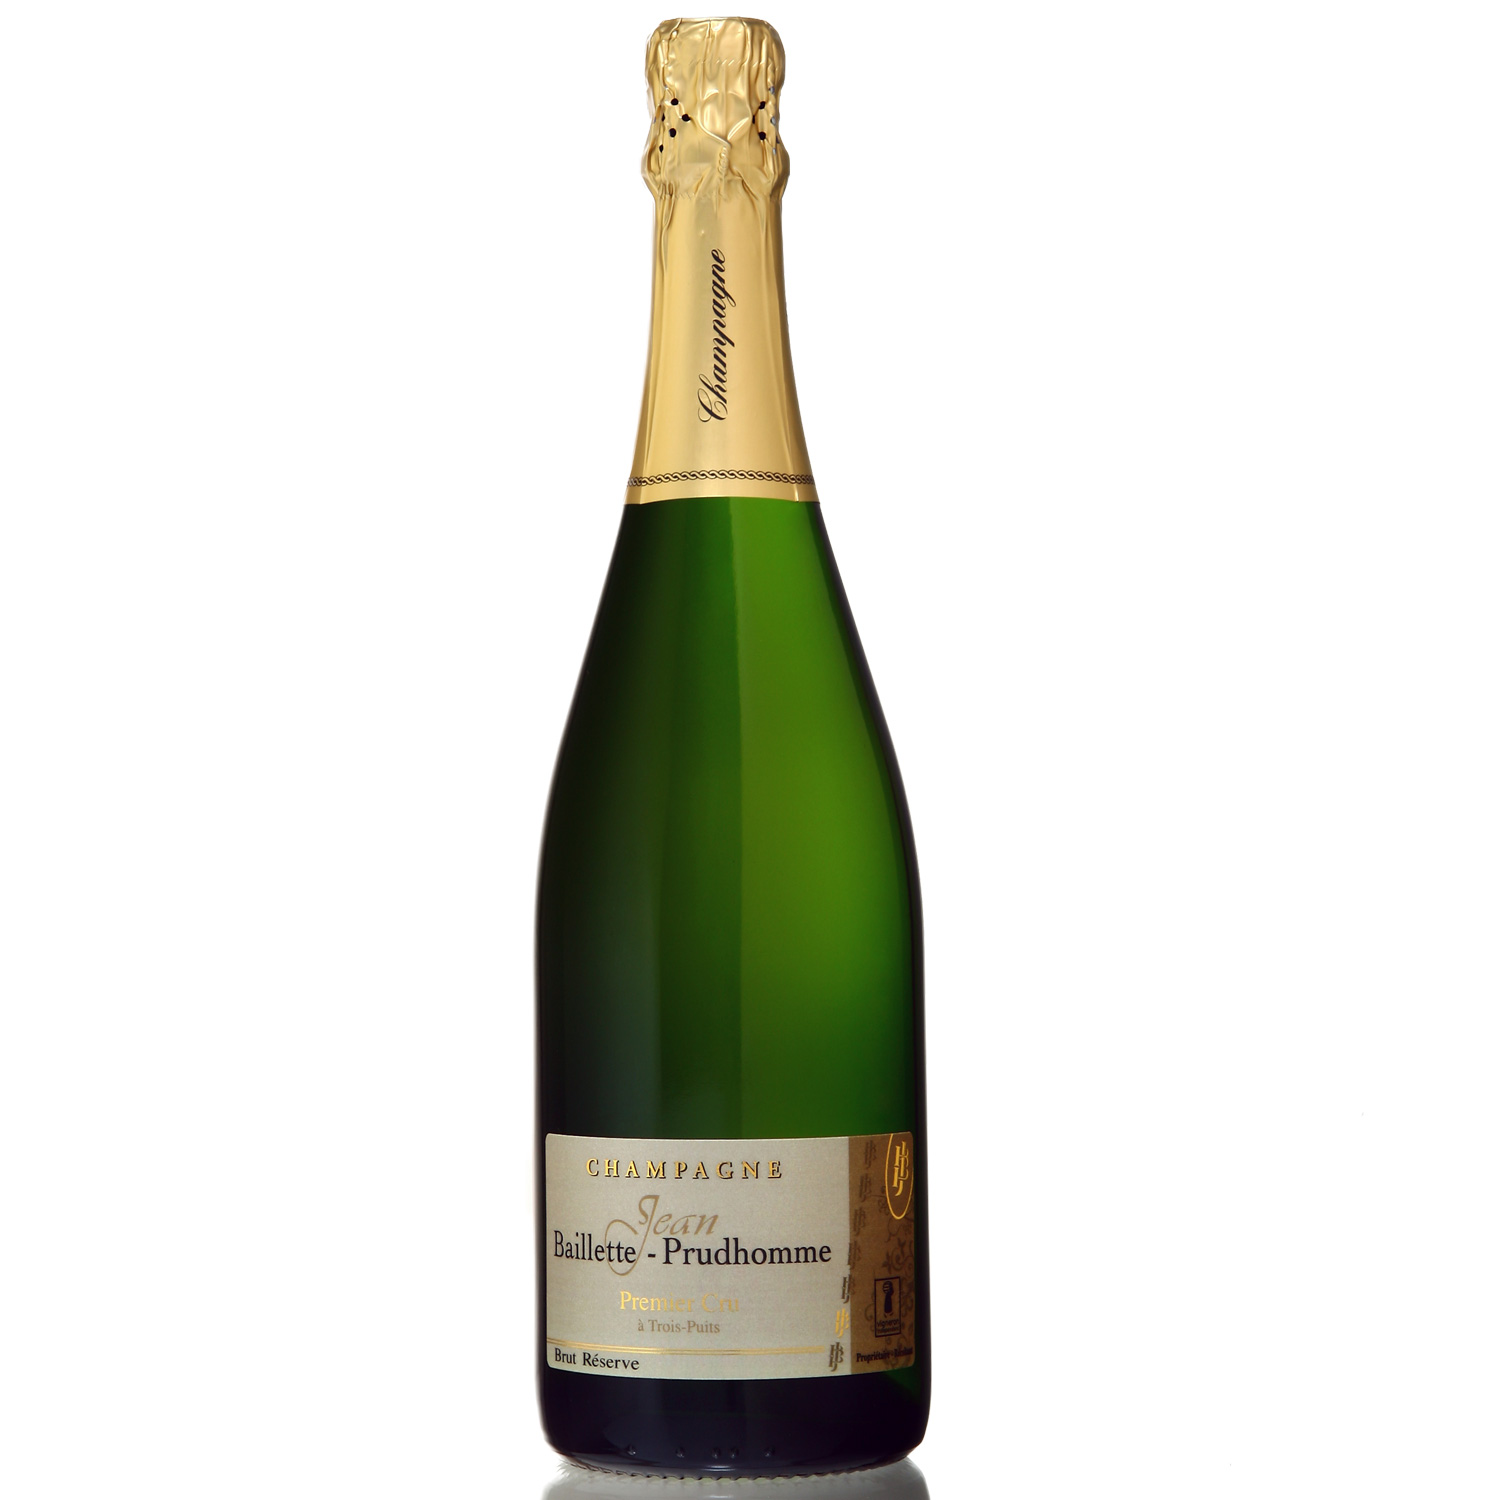 Champagne Jean Baillette-Prudhomme: Brut Réserve - 1er Cru